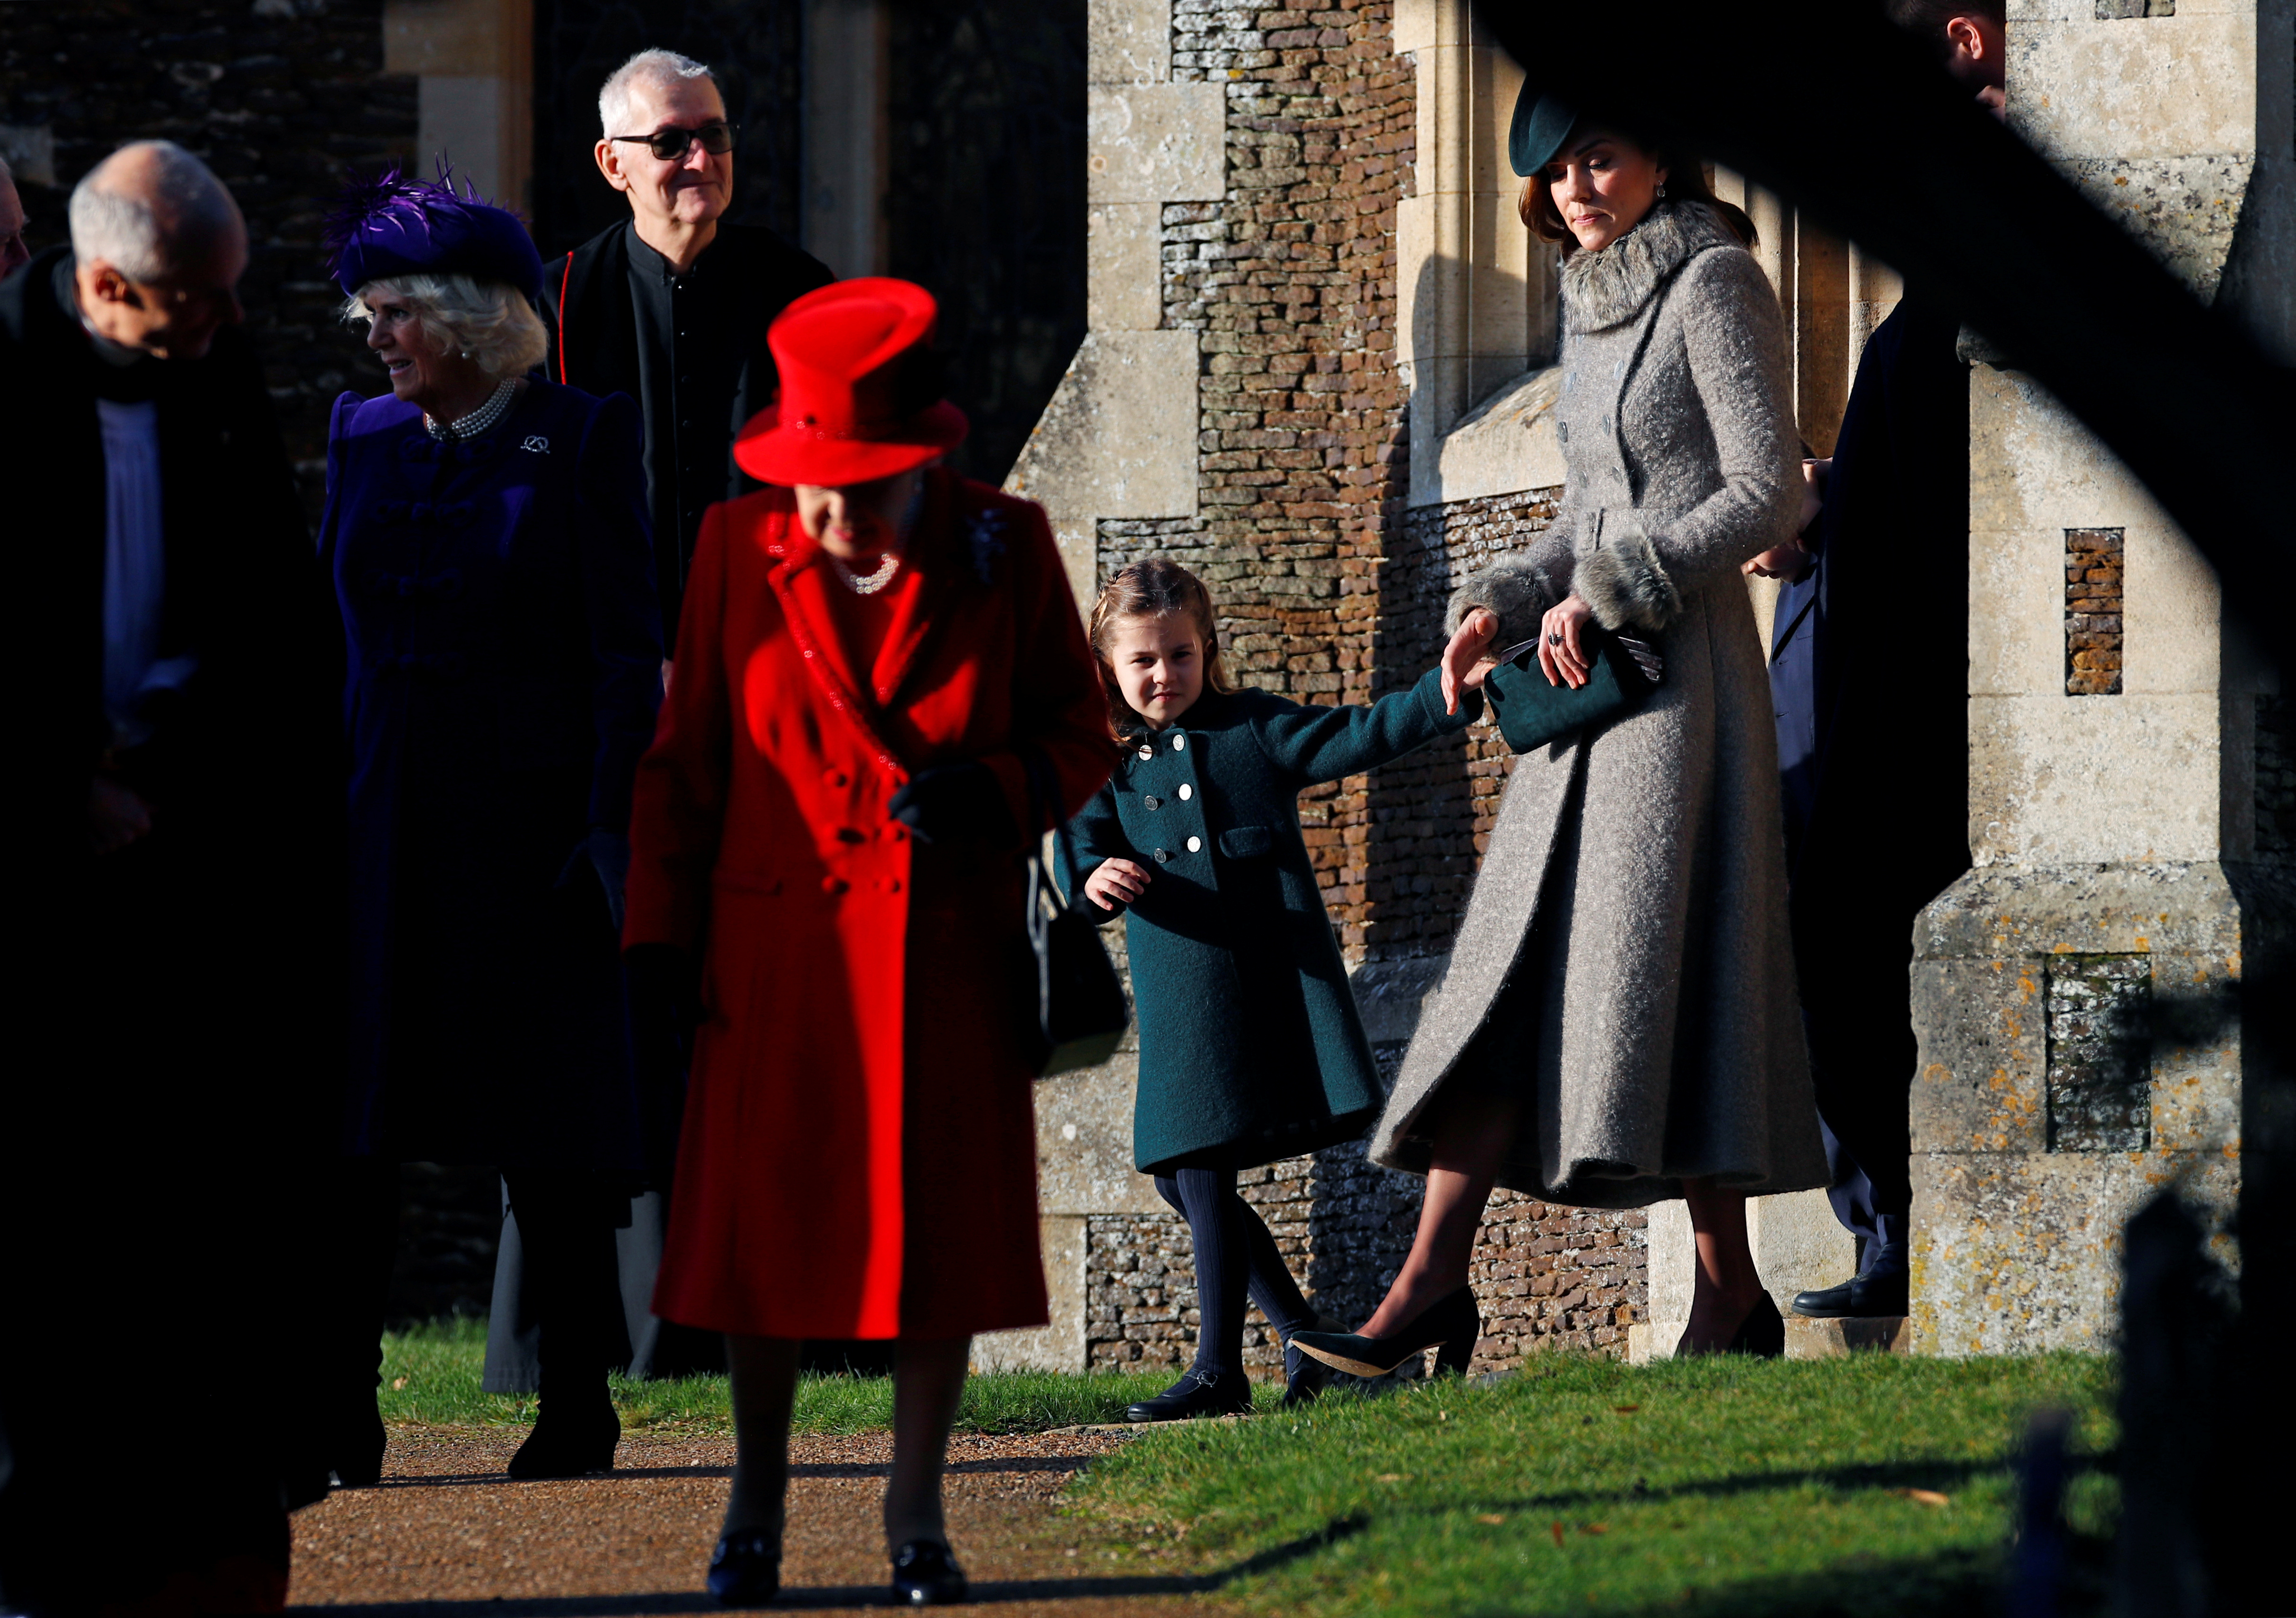 La familia real británica va a la Iglesia por Navidad en un año de baches